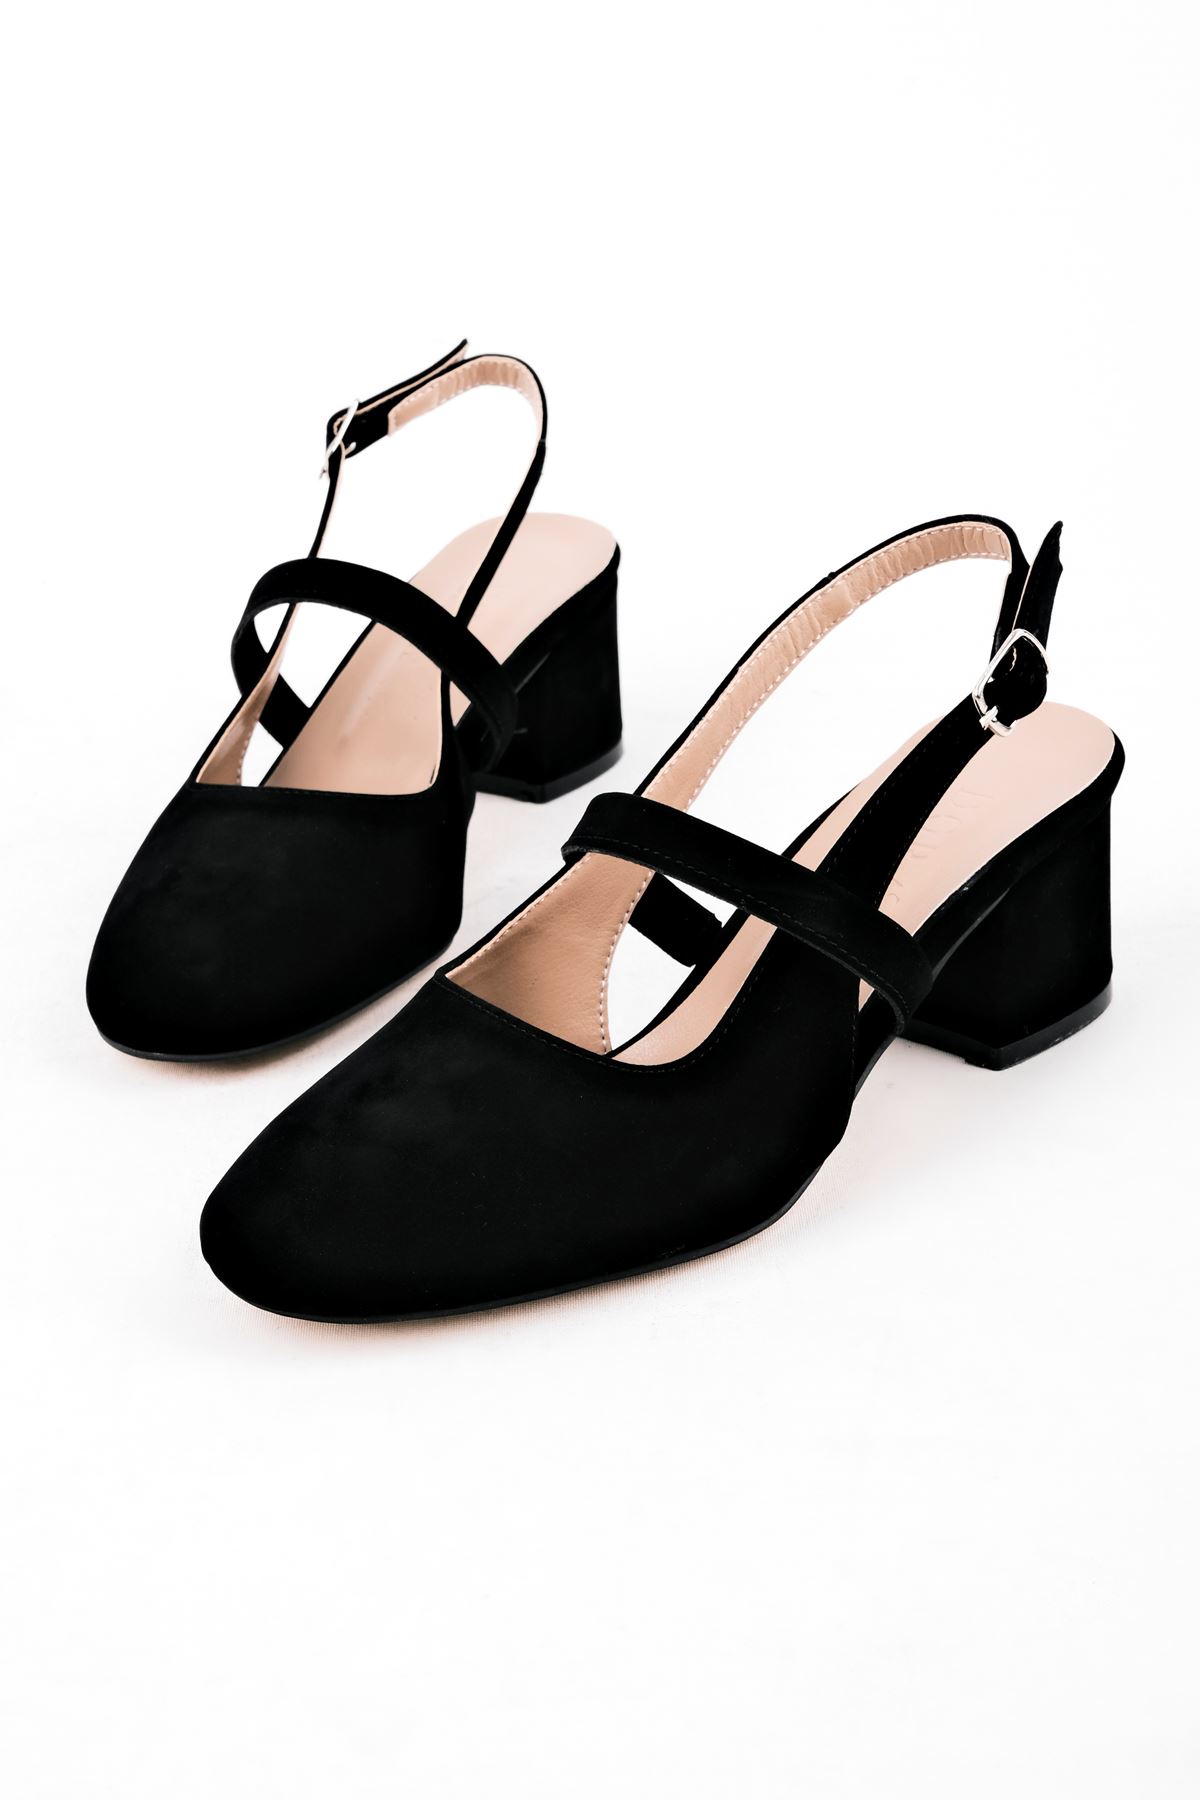 Biana Kadın Topuklu Ayakkabı Bant Detaylı-S.Siyah